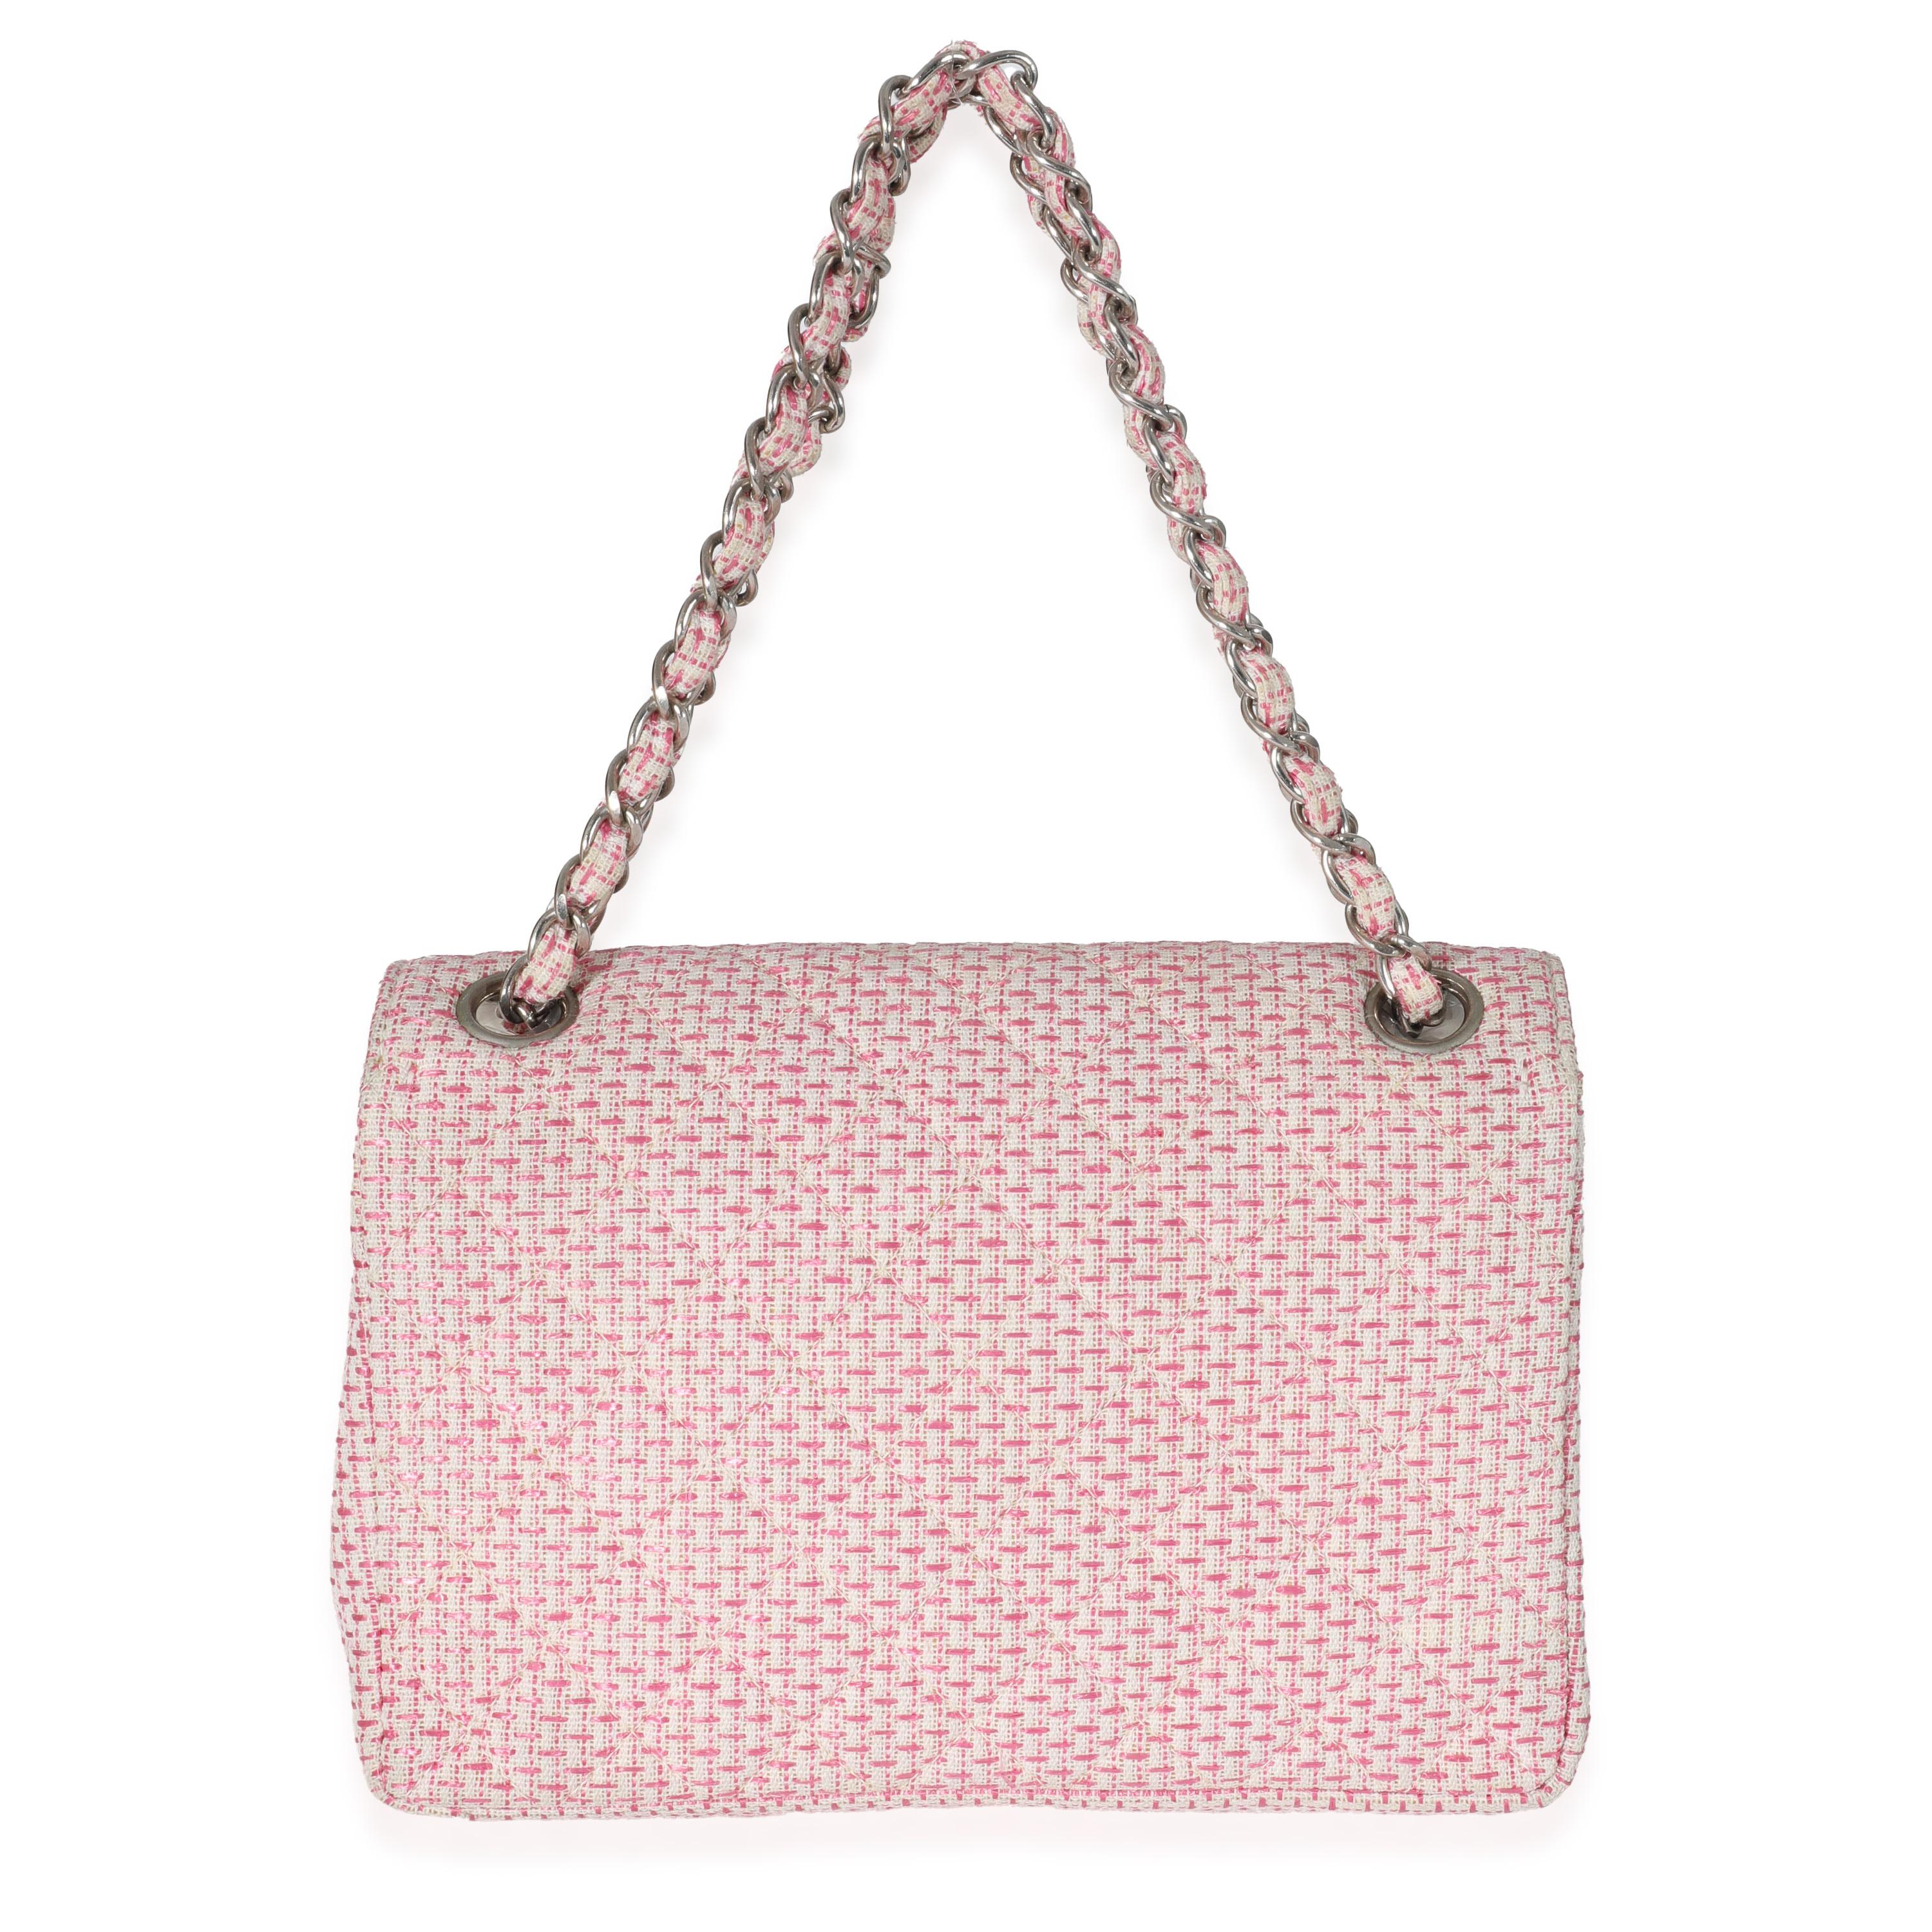 Titre du listing : Chanel Raffia Woven Pink White Small CC Shoulder Flap Bag
SKU : 132127
Condit : Usagé 
Description de l'état : Un classique intemporel qui ne se démode jamais, le sac à rabat de Chanel date de 1955 et a connu un certain nombre de